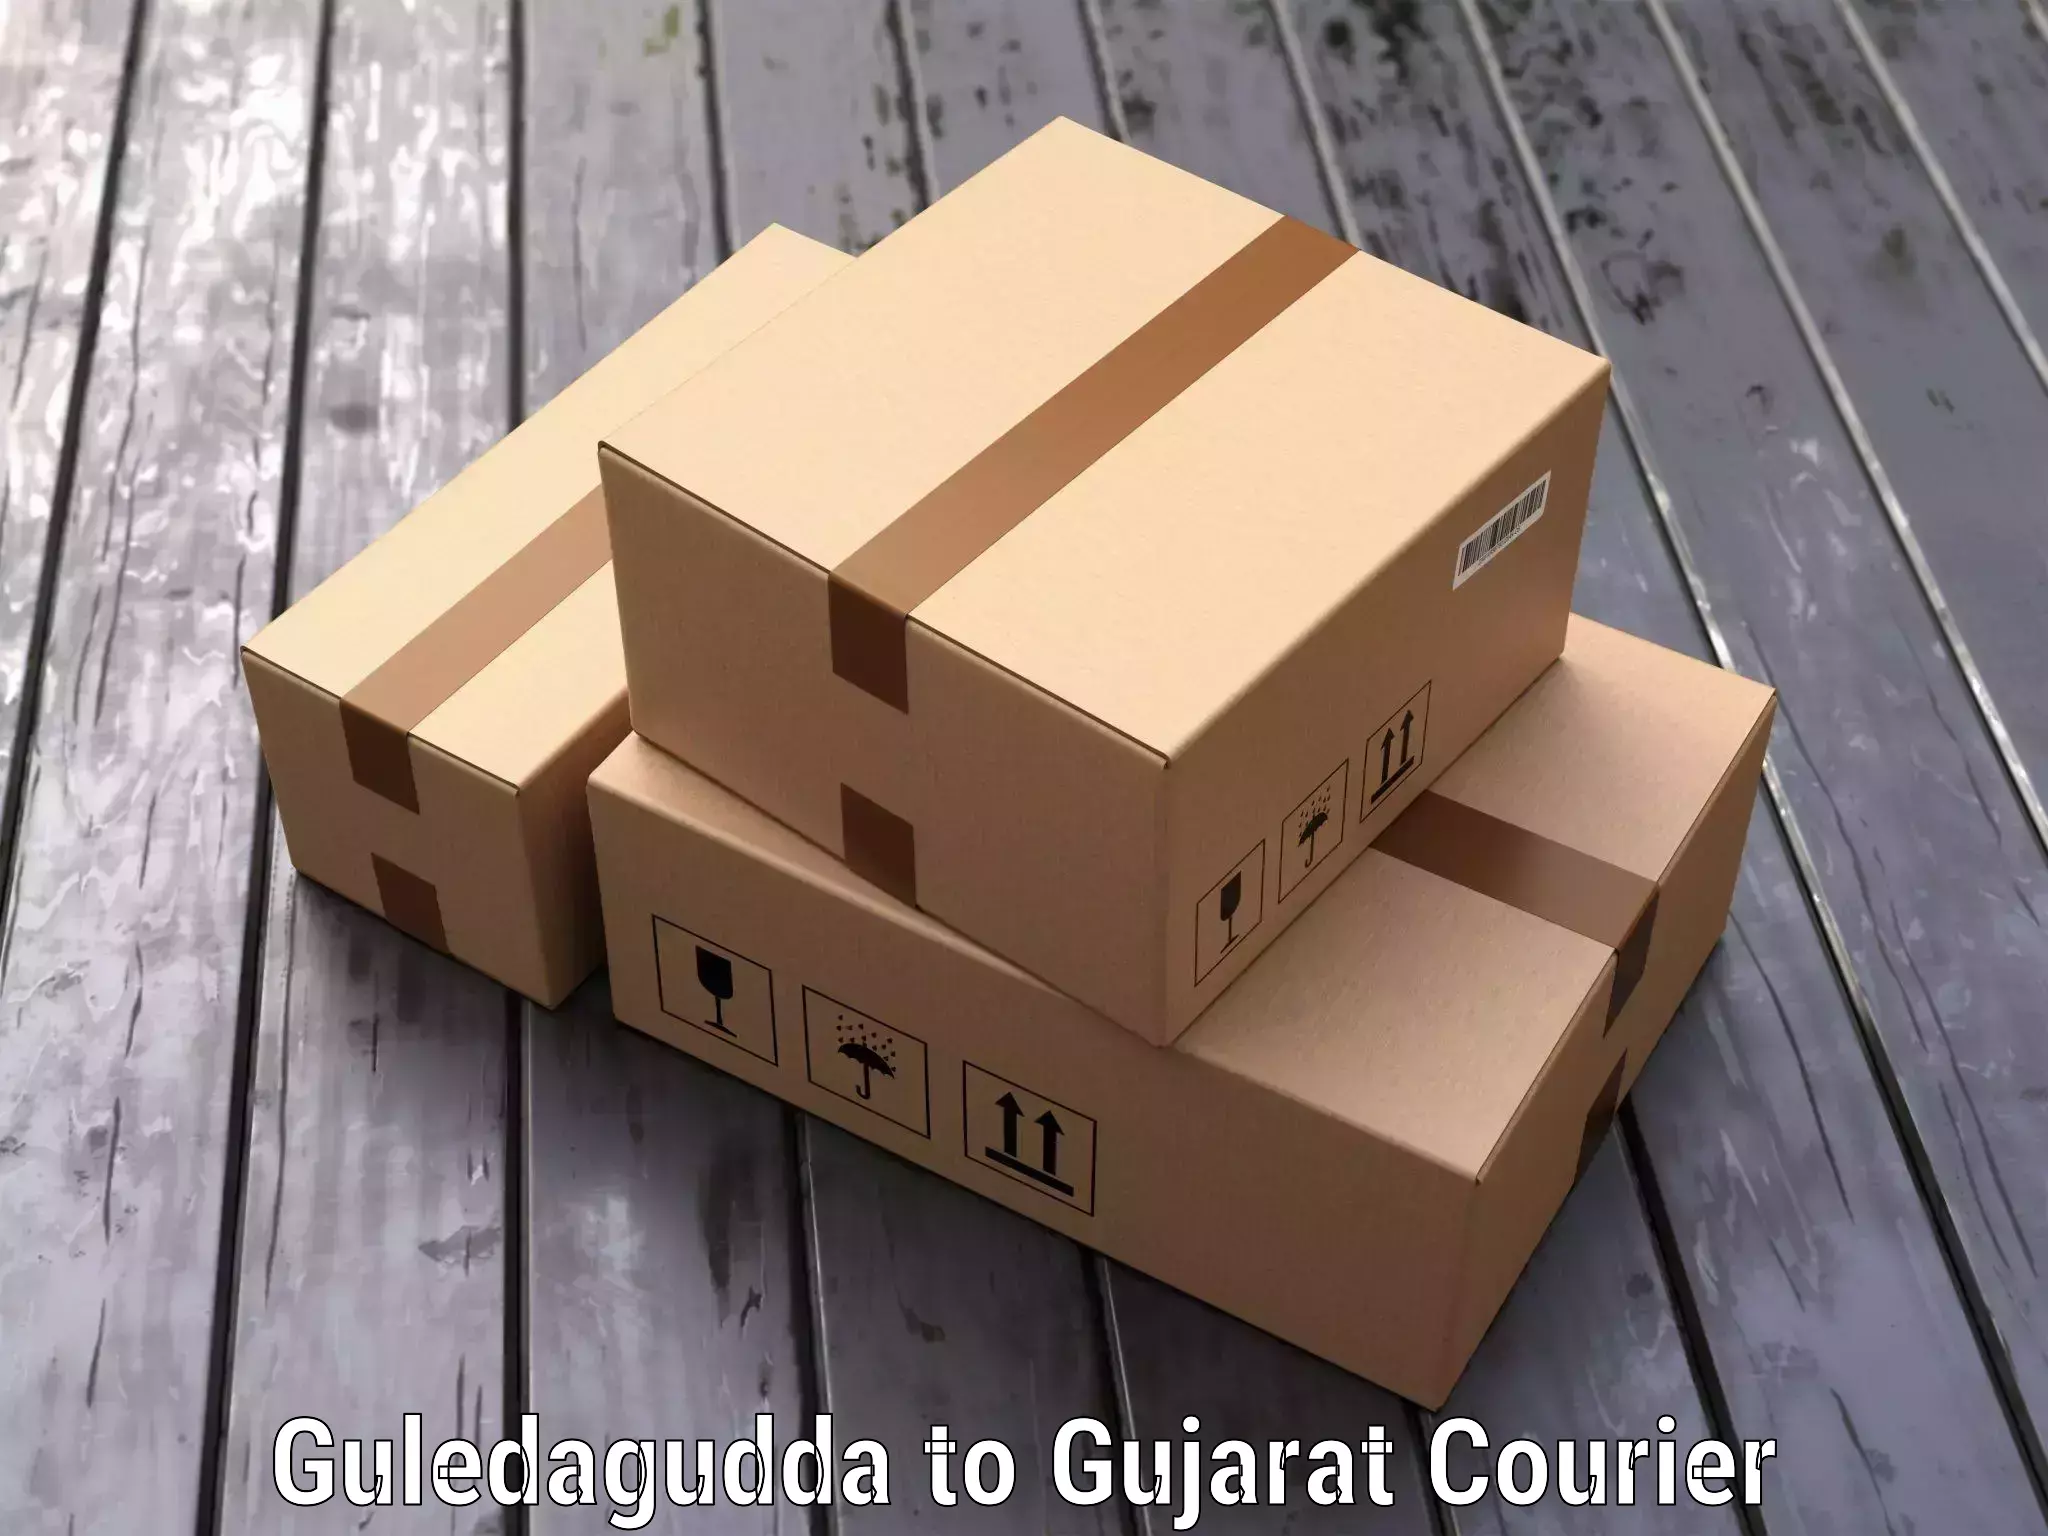 Door-to-door baggage service Guledagudda to Gujarat